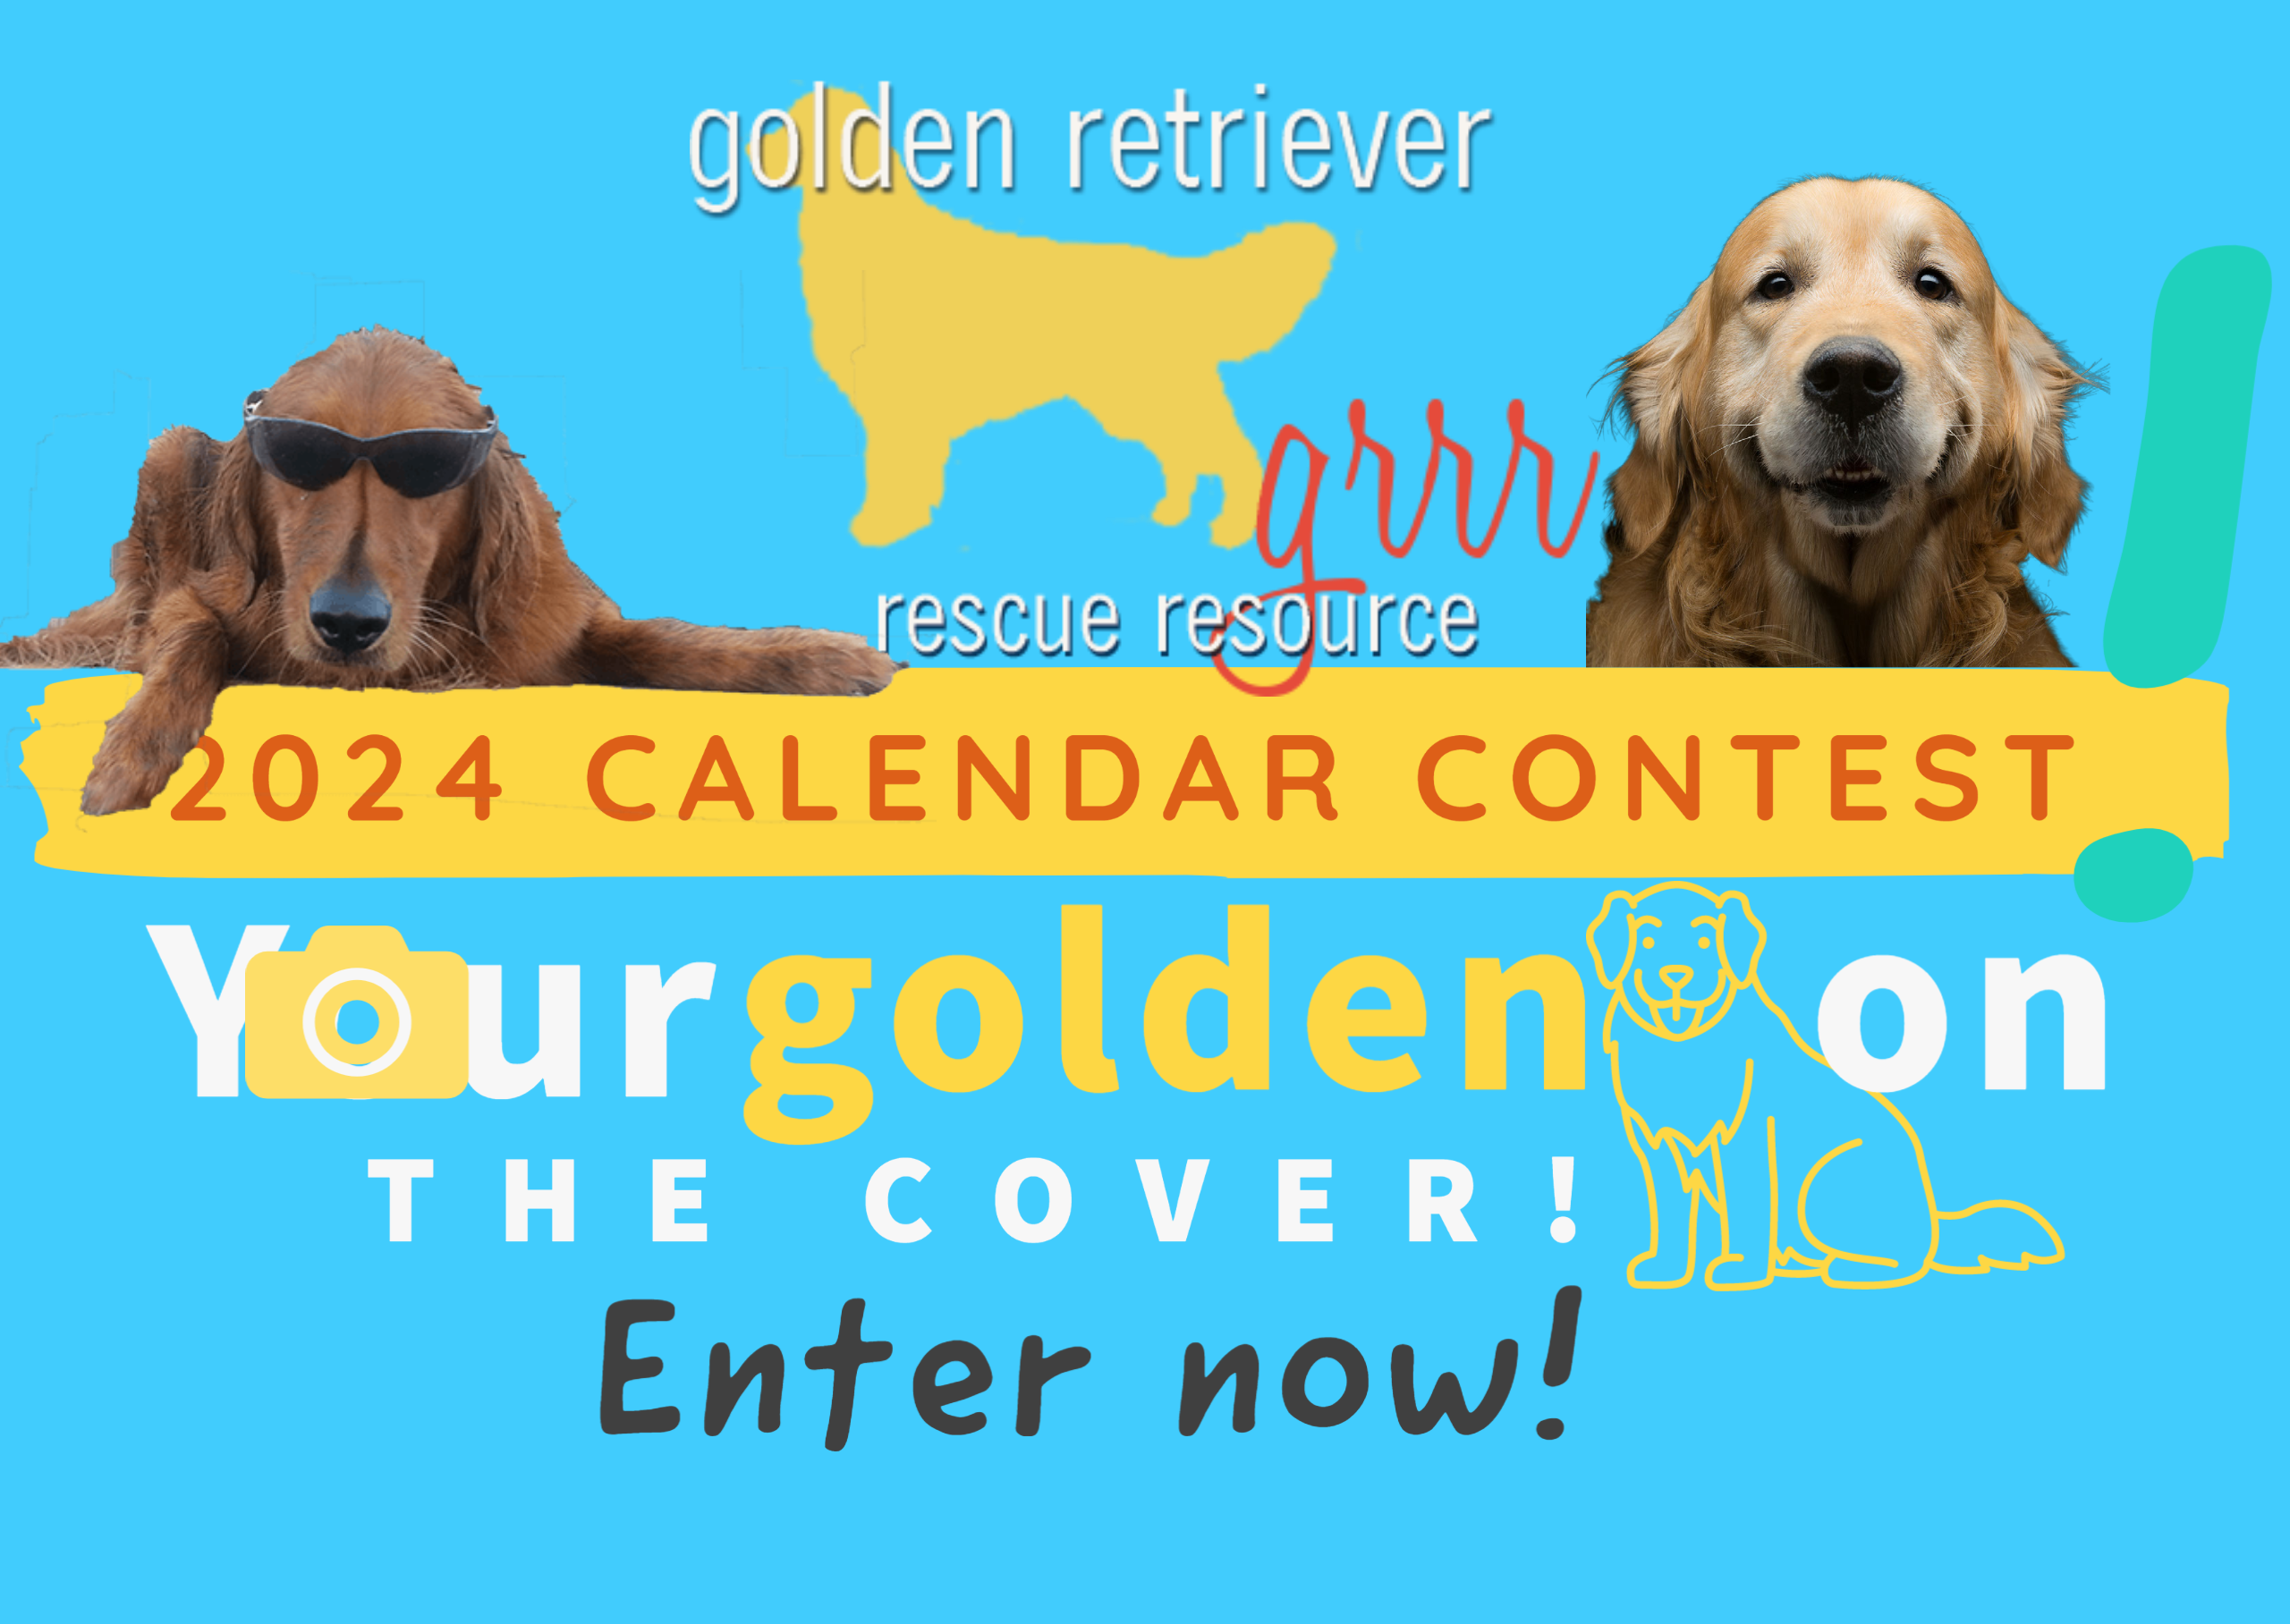 Golden Retriever Rescue Resource Calendar Contest for 2024